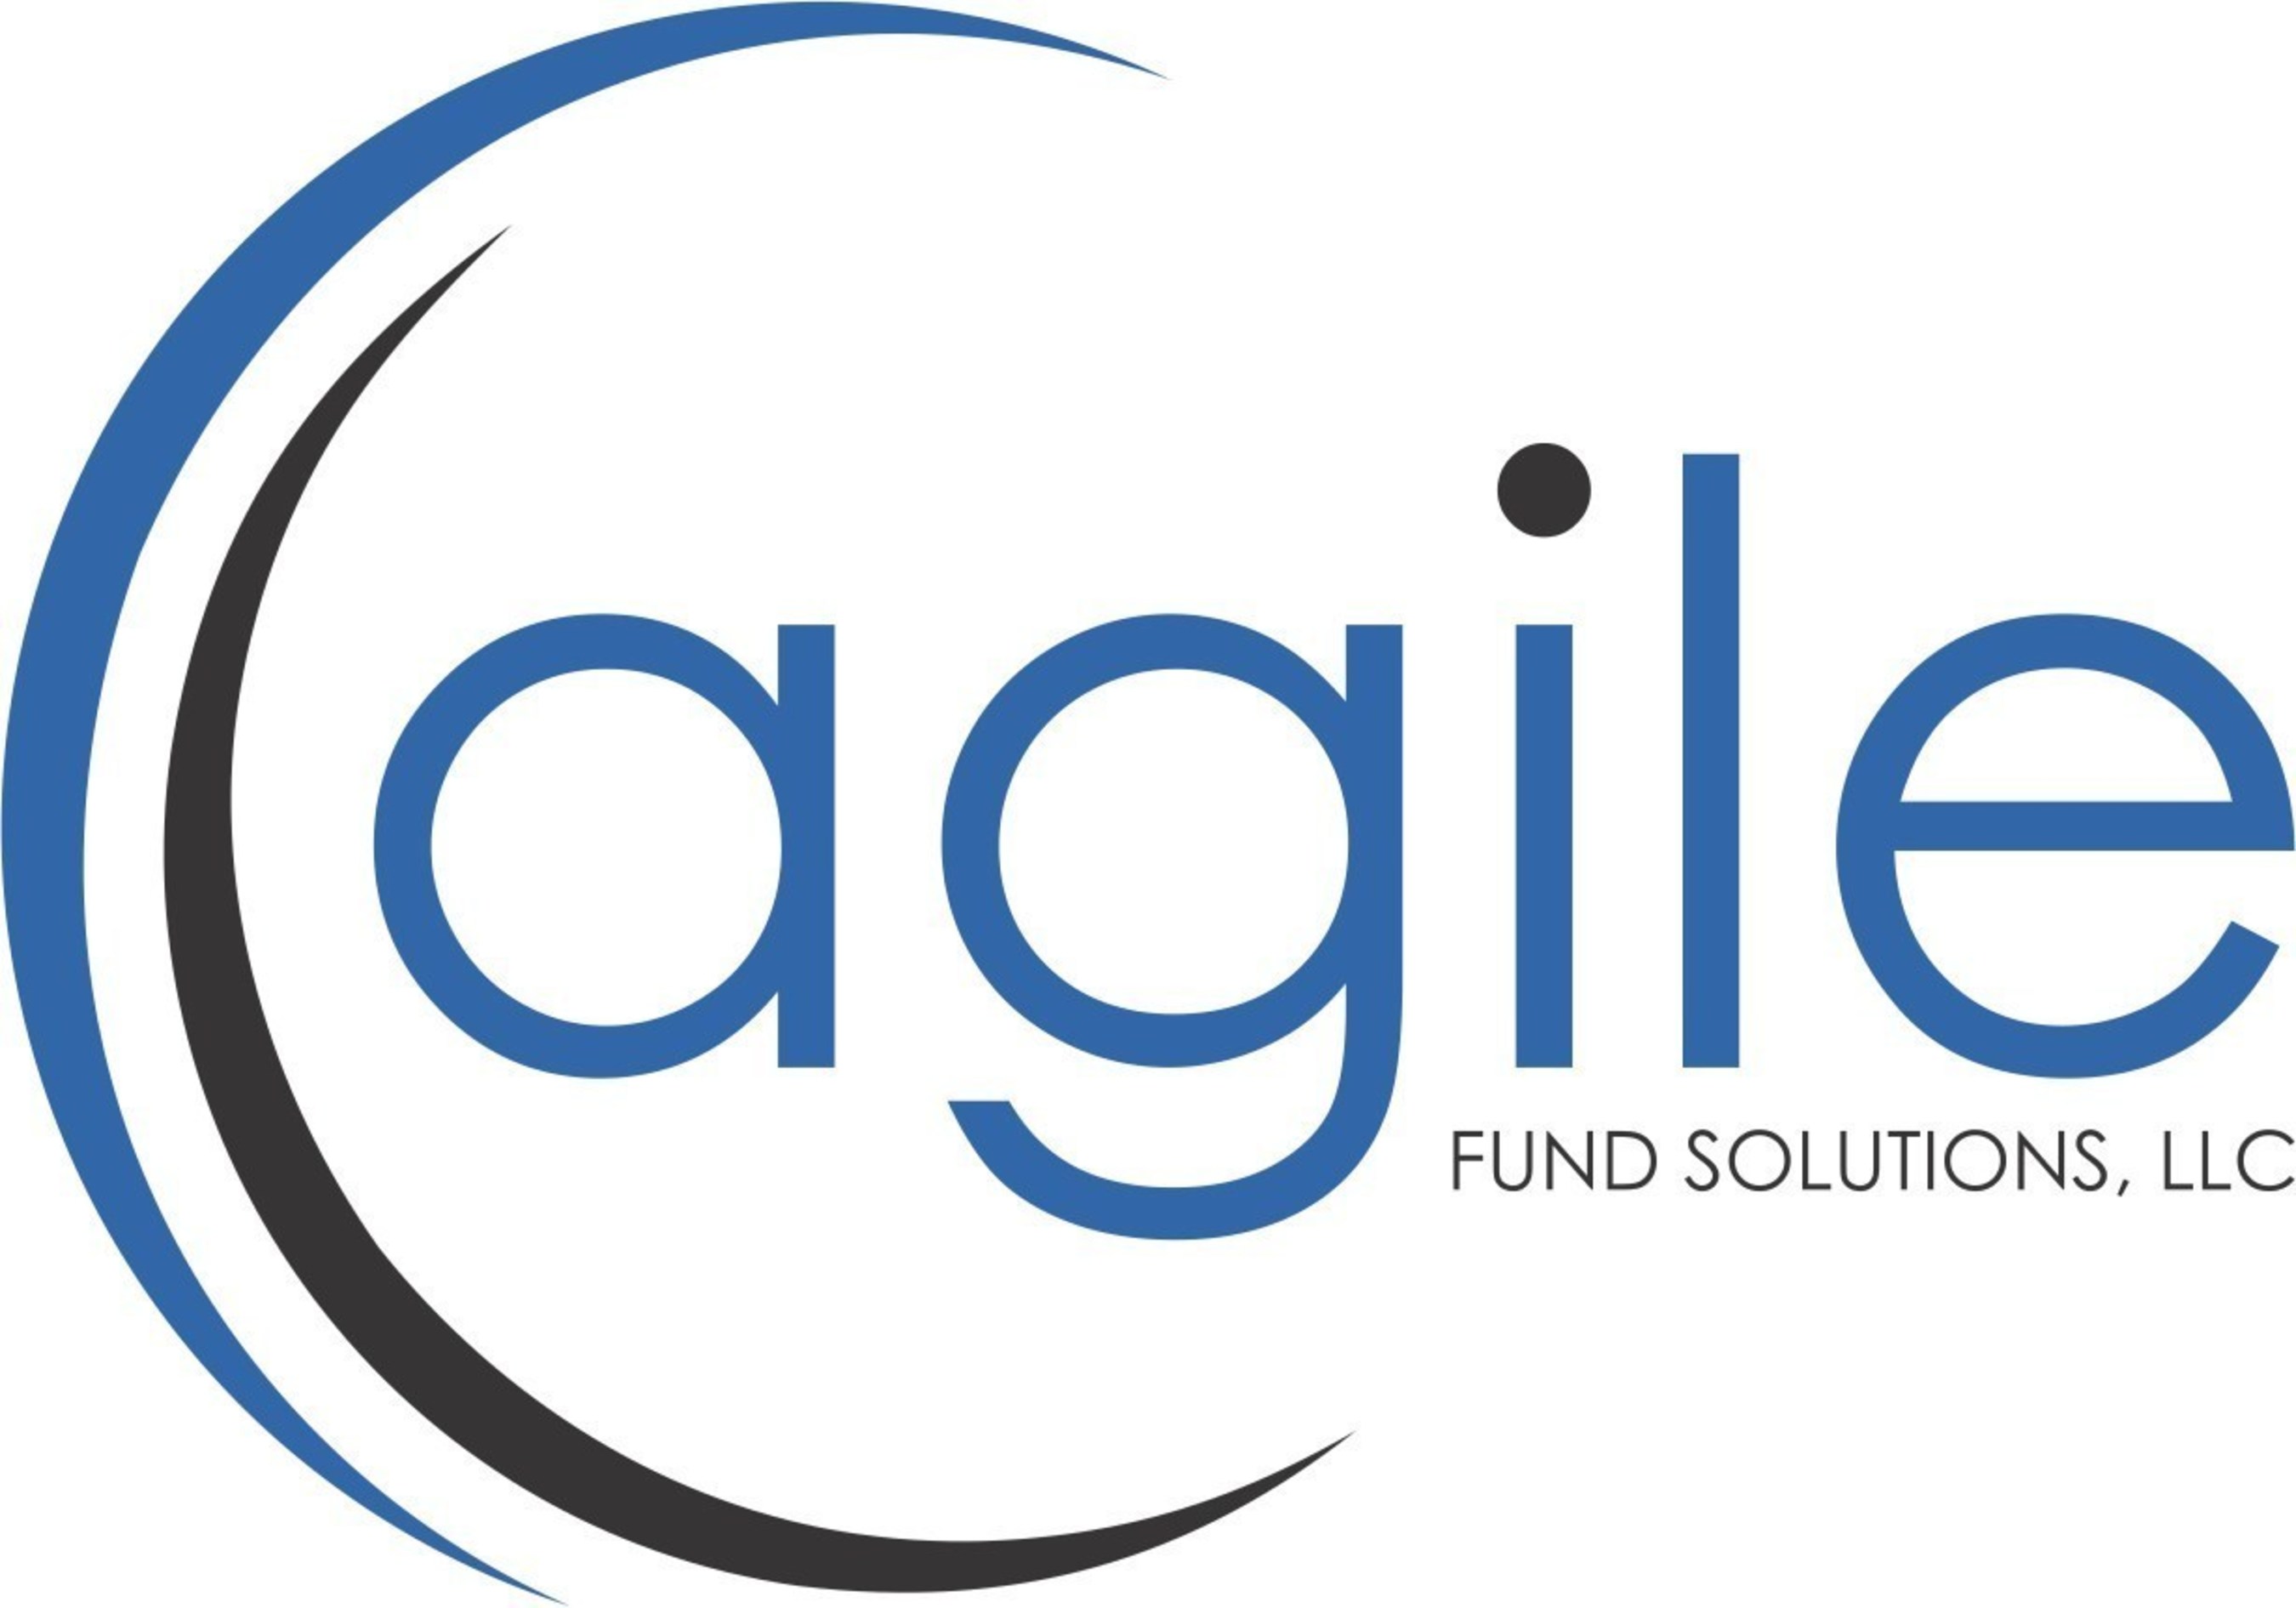 Agile Fund Solutions, LLC (Agile) logo.